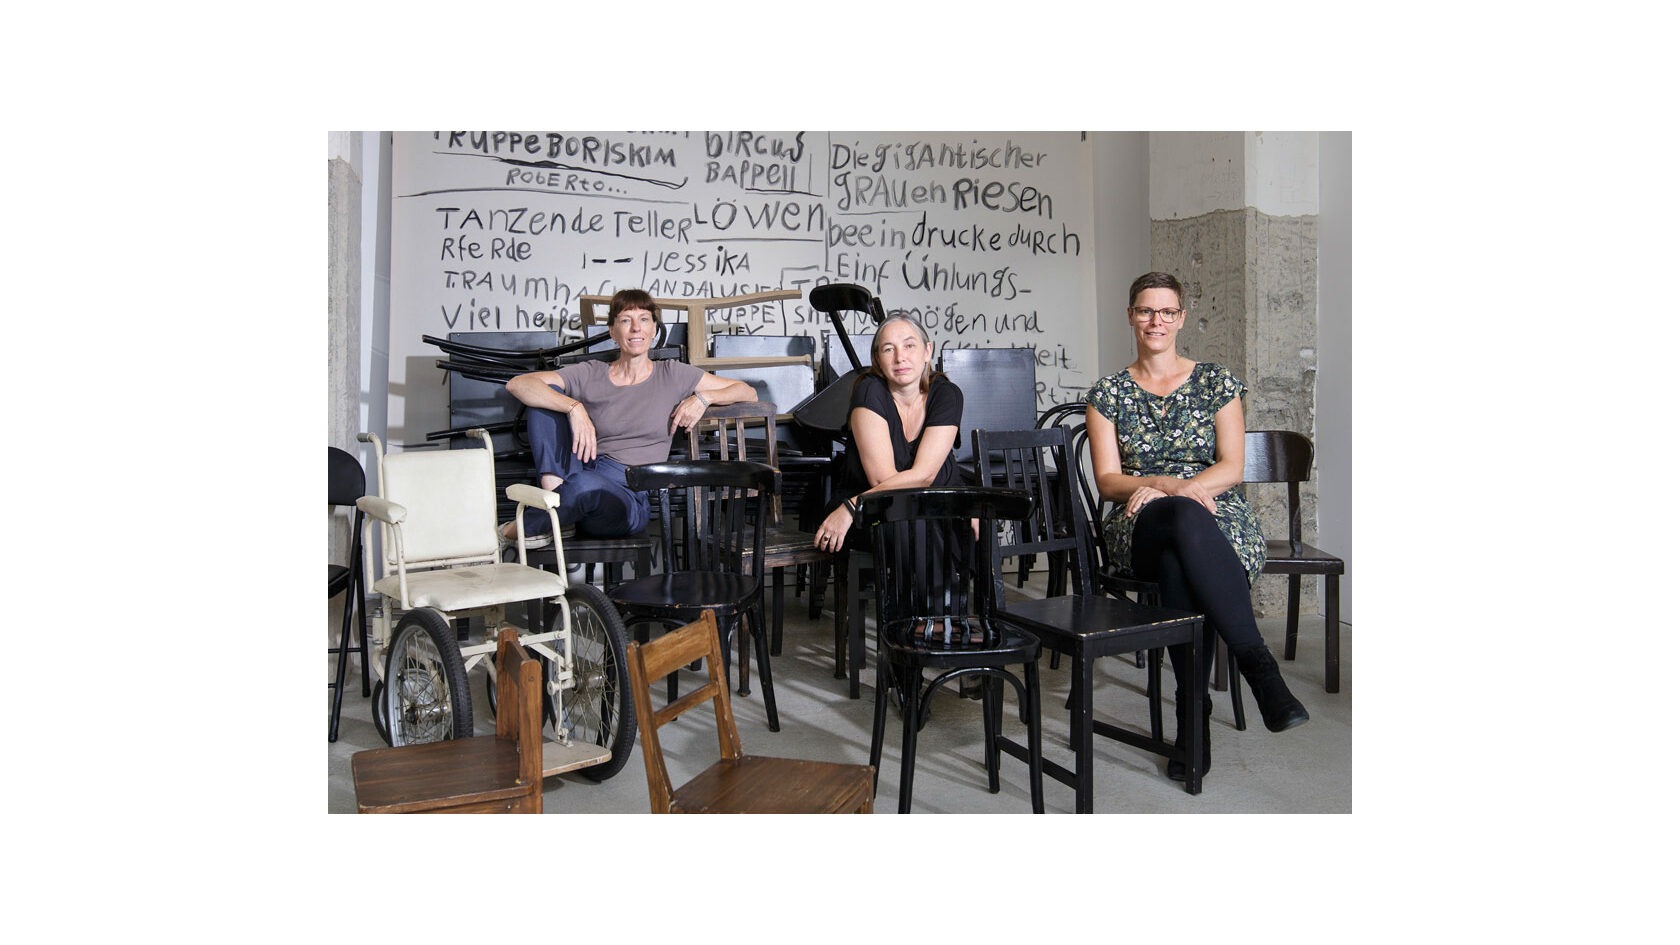 Portraitfoto der Initiatorinnen des "Straßentheaterprojekts" vom Kunst- und Kulturverein farbwerk e. V., Julia Amme, Jacqueline Hamann und Svea Duwe. Sie sitzen in einem Raum voller Stühle neben einem historischen Rollstuhl.